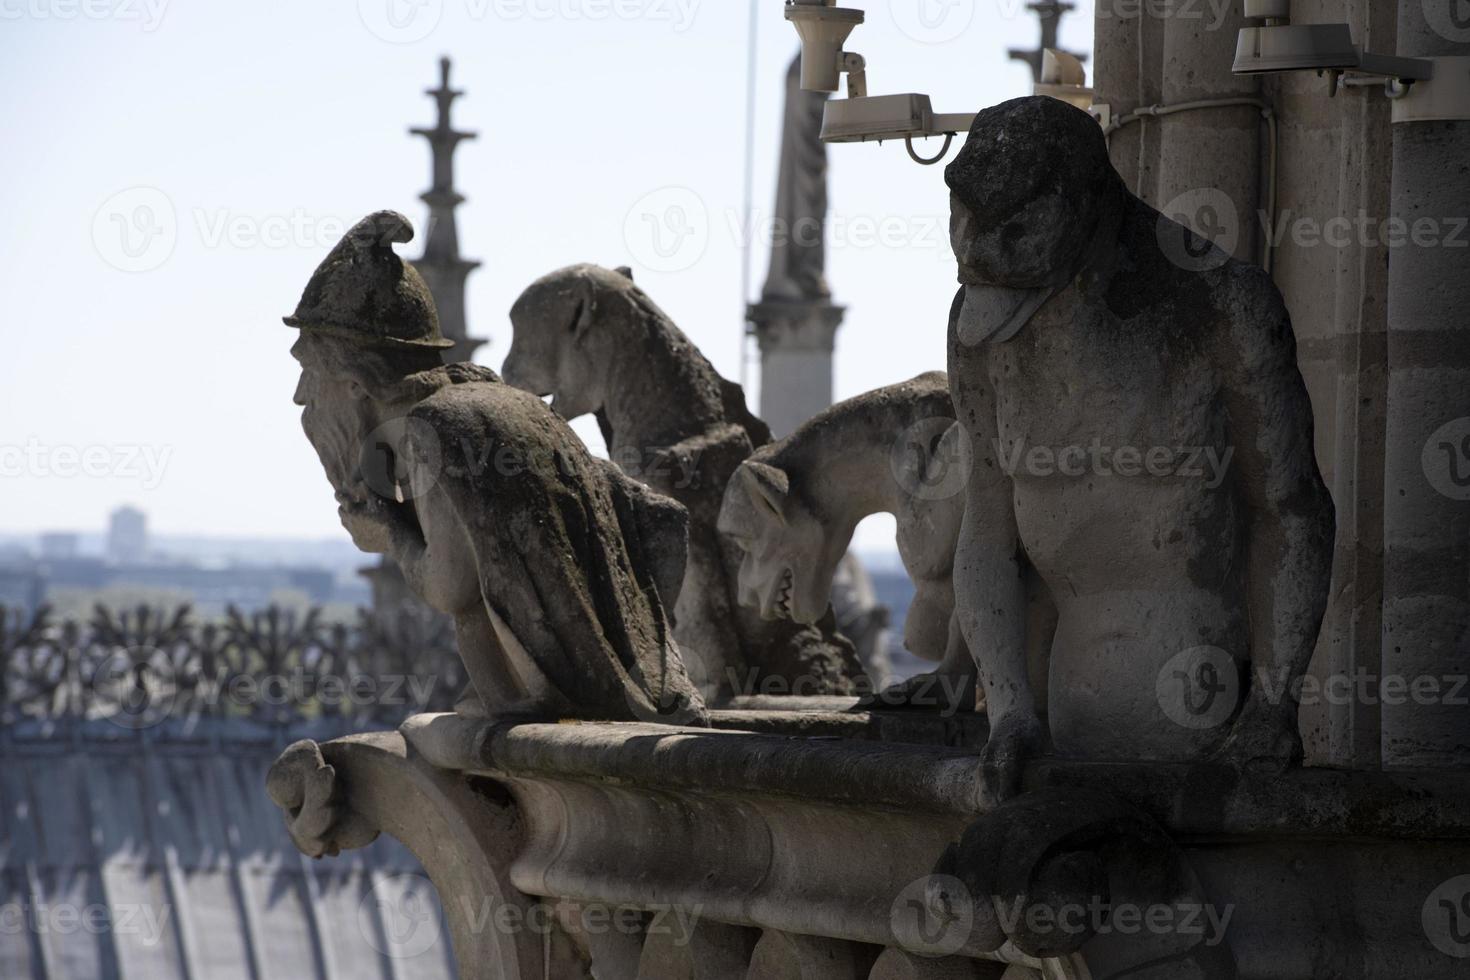 notre dama Parigi Cattedrale statua scultura e tetto prima fuoco foto